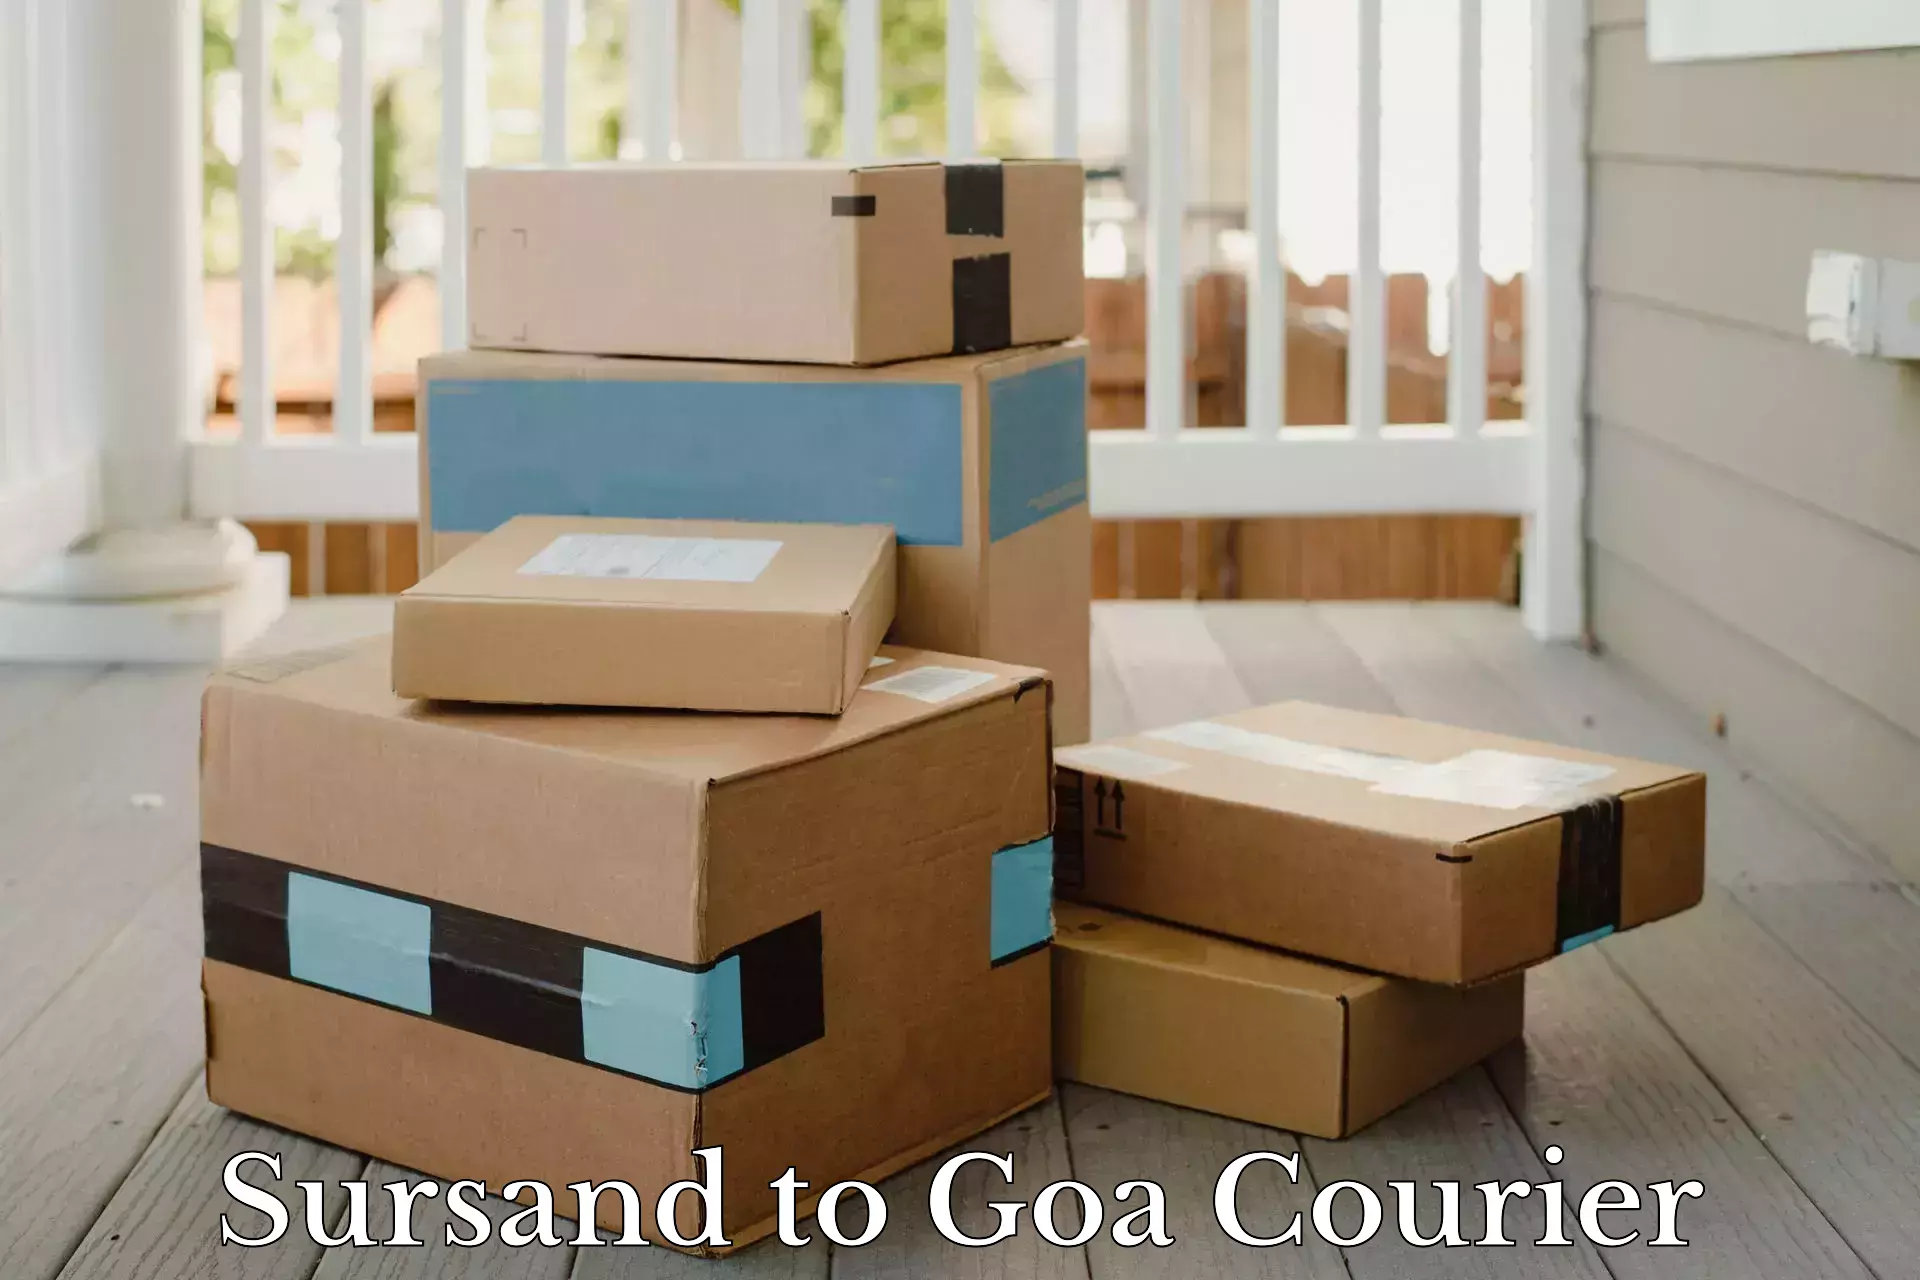 Digital courier platforms Sursand to South Goa